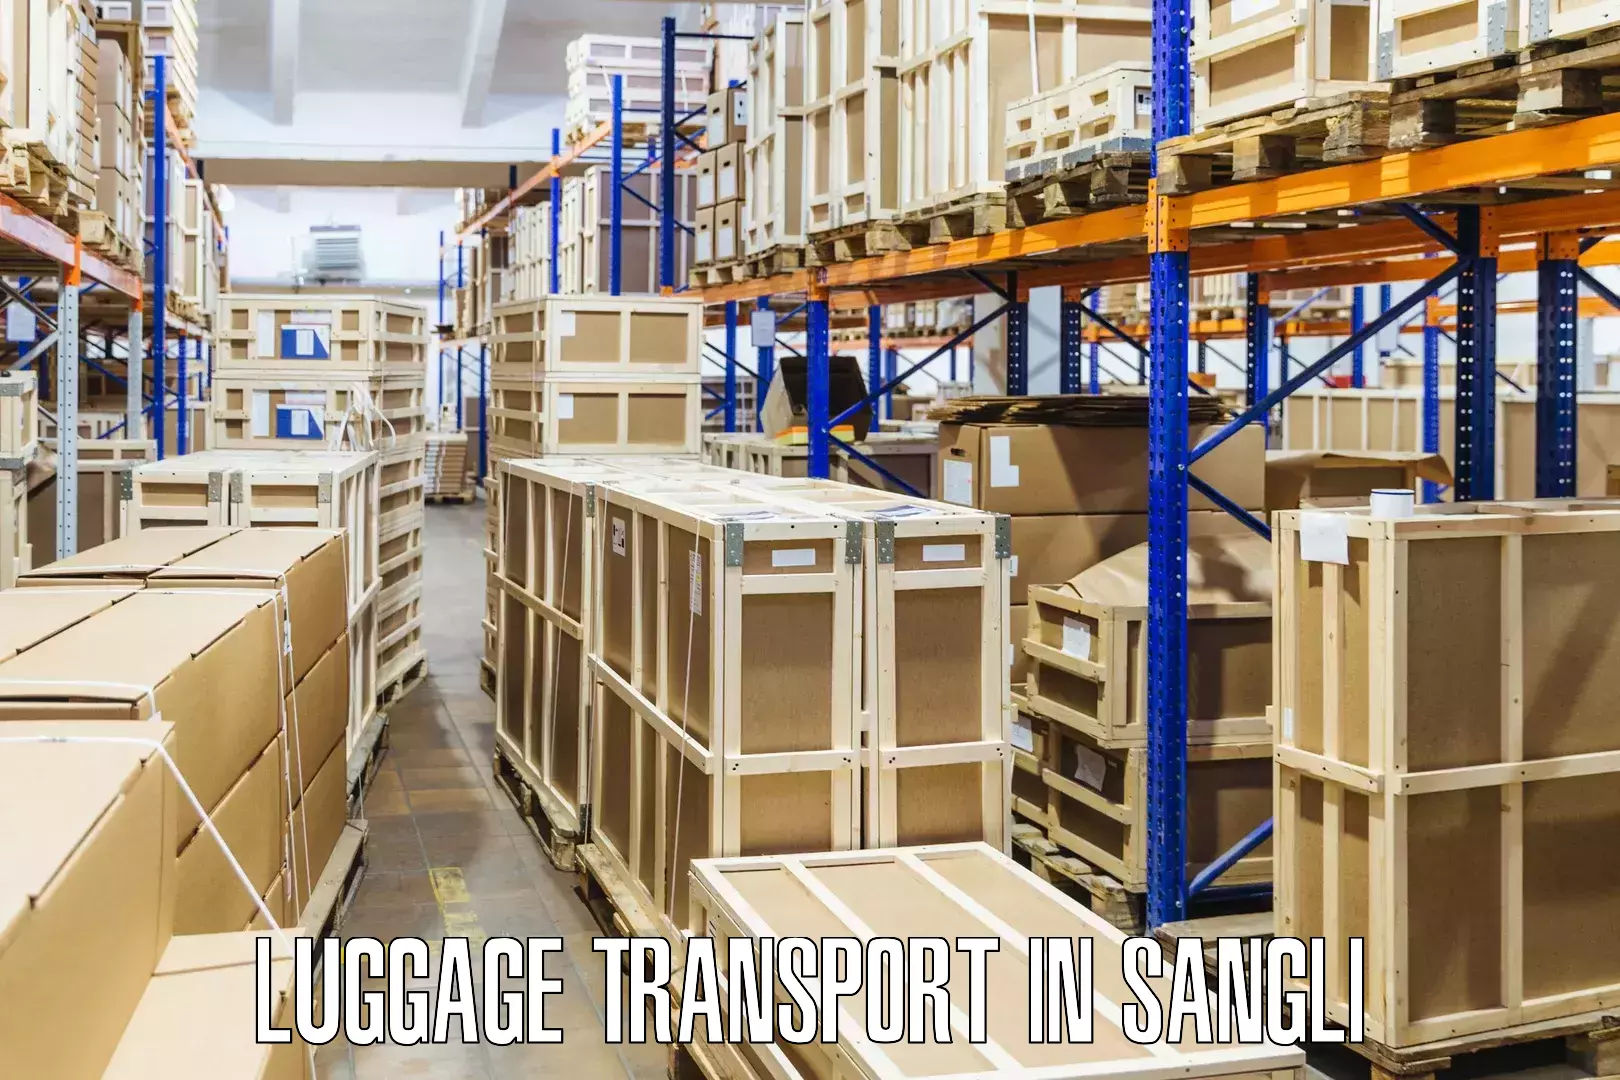 Premium luggage delivery in Sangli